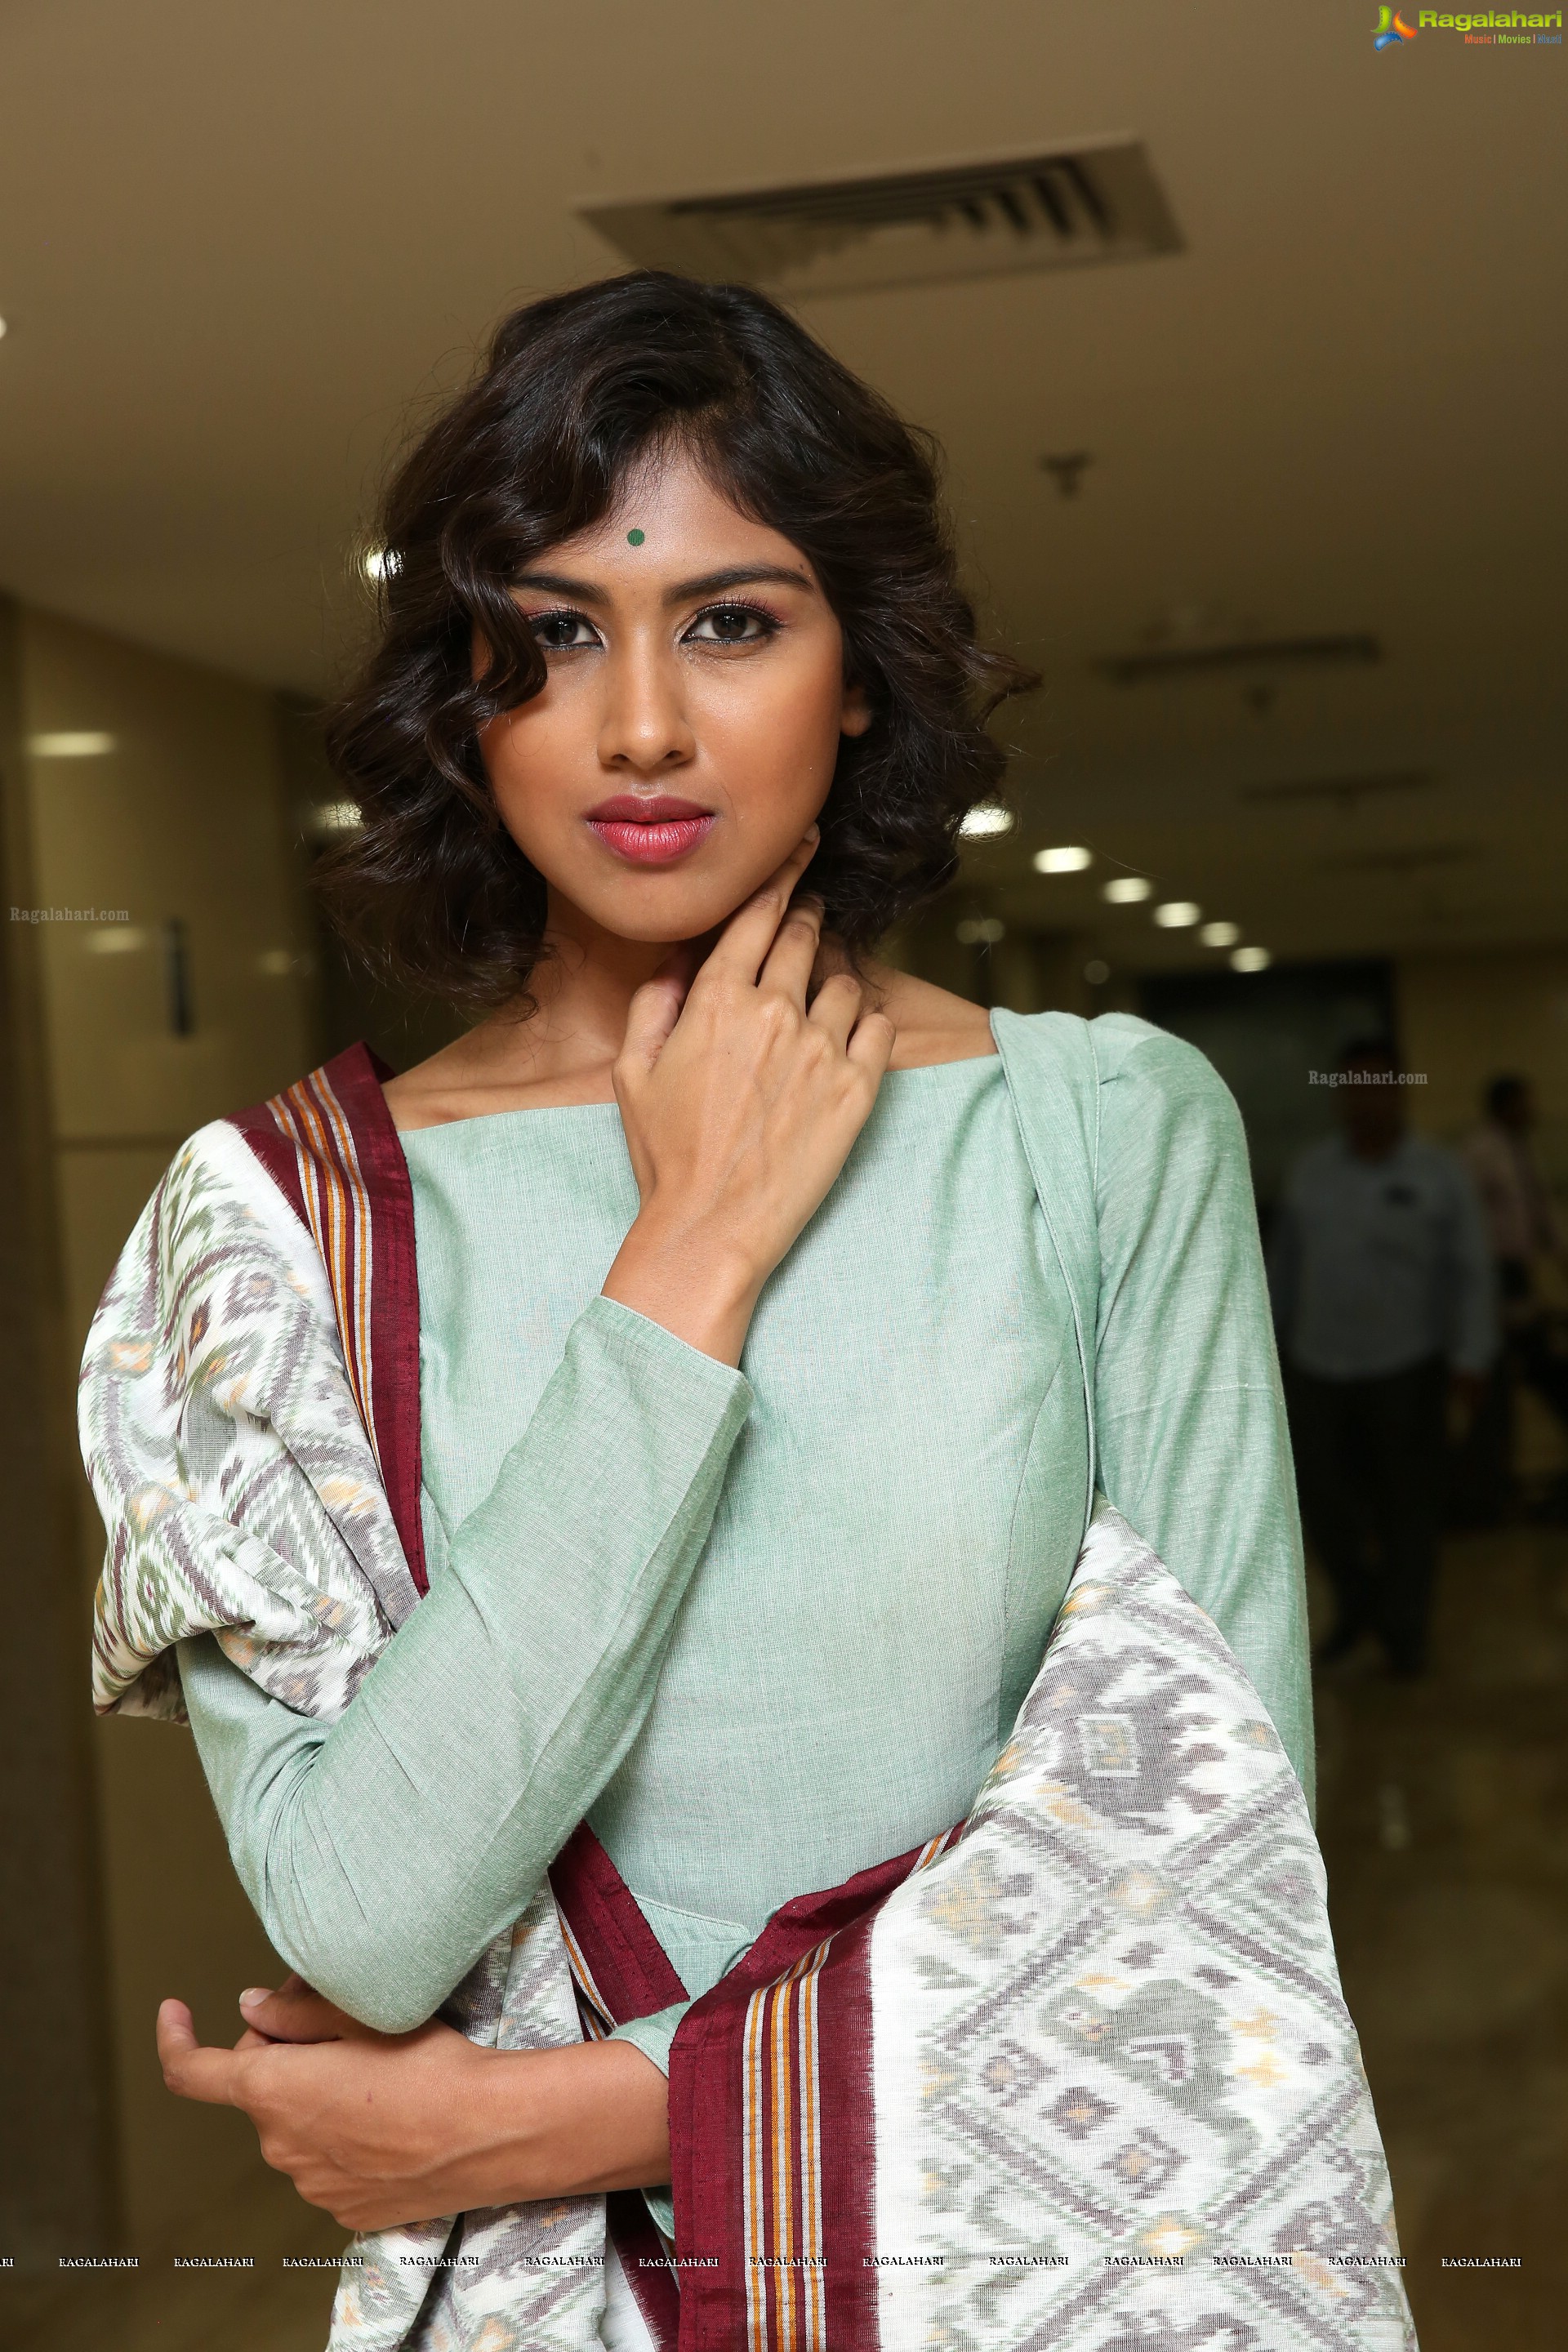 Rishitha Koruturu at Nixon Series Fashion Show (High Definition)